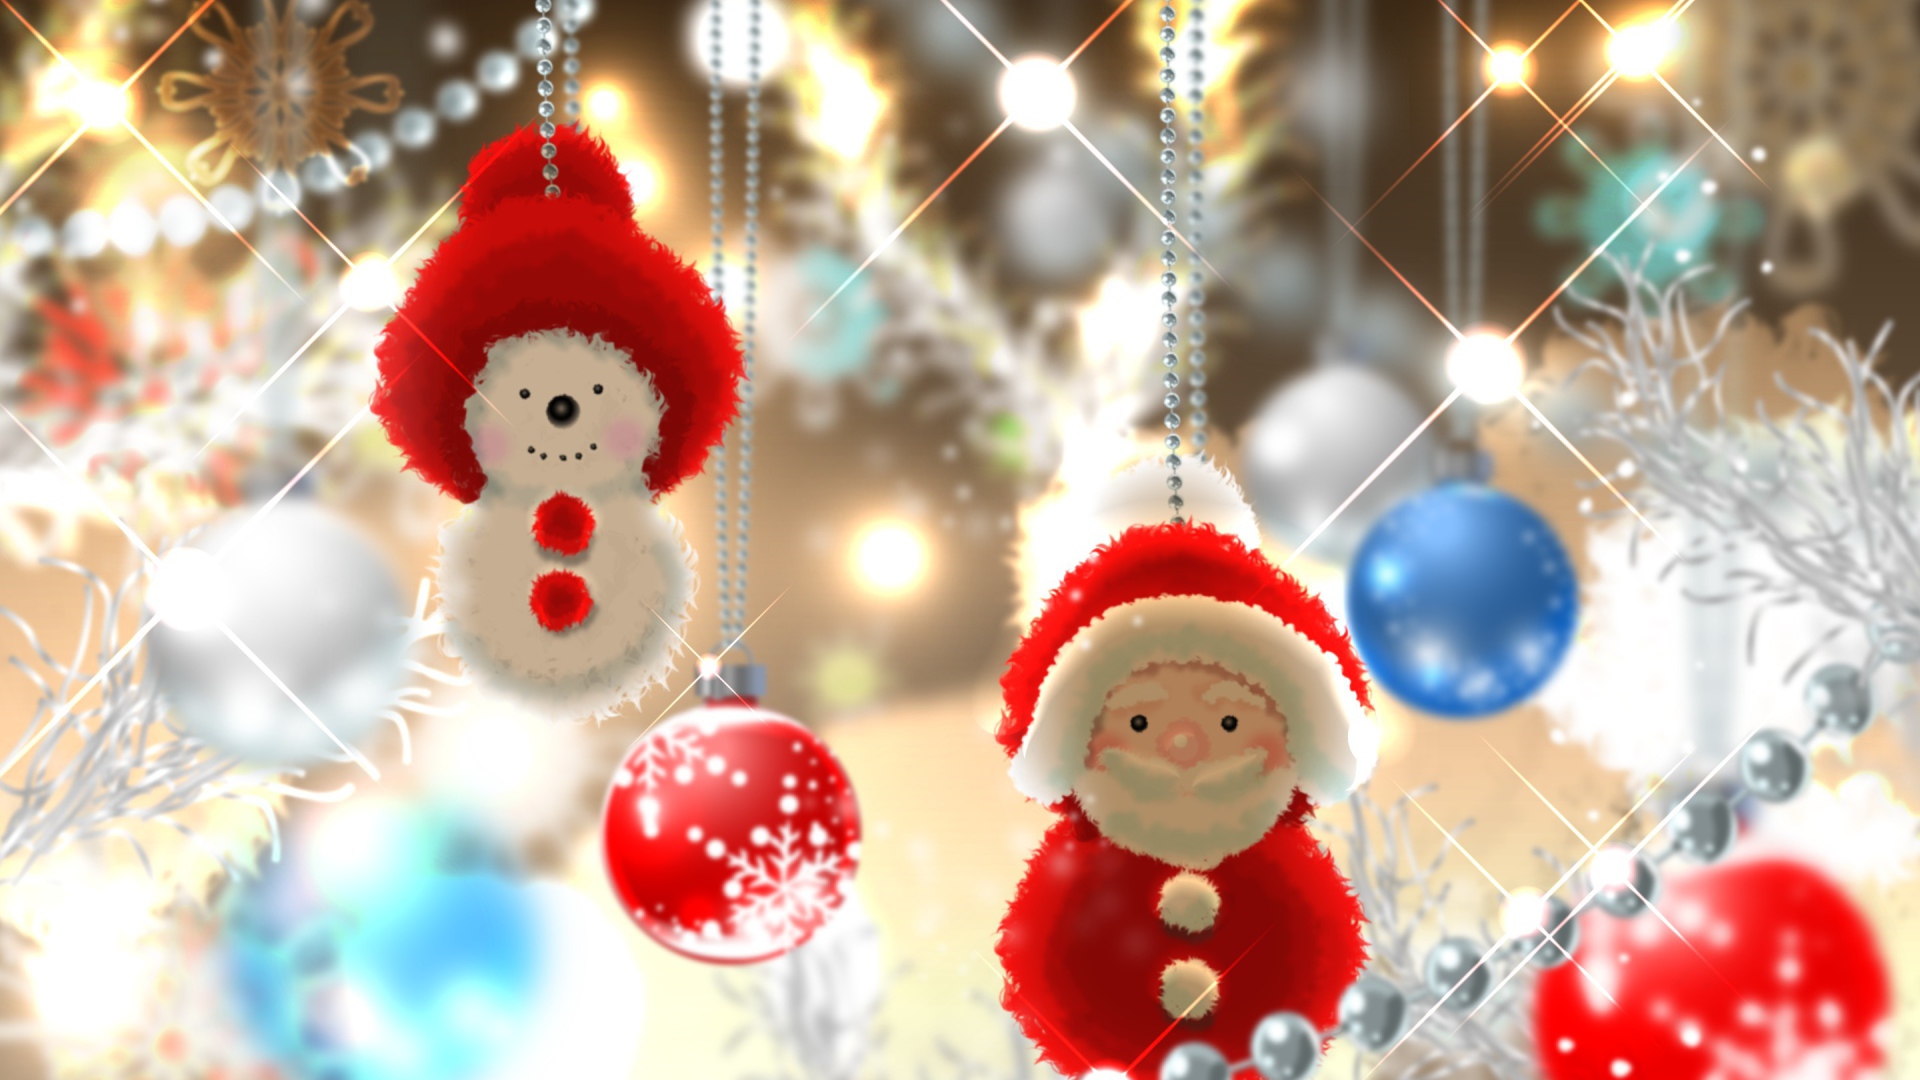 Игрушки Дед Мороз и снеговик